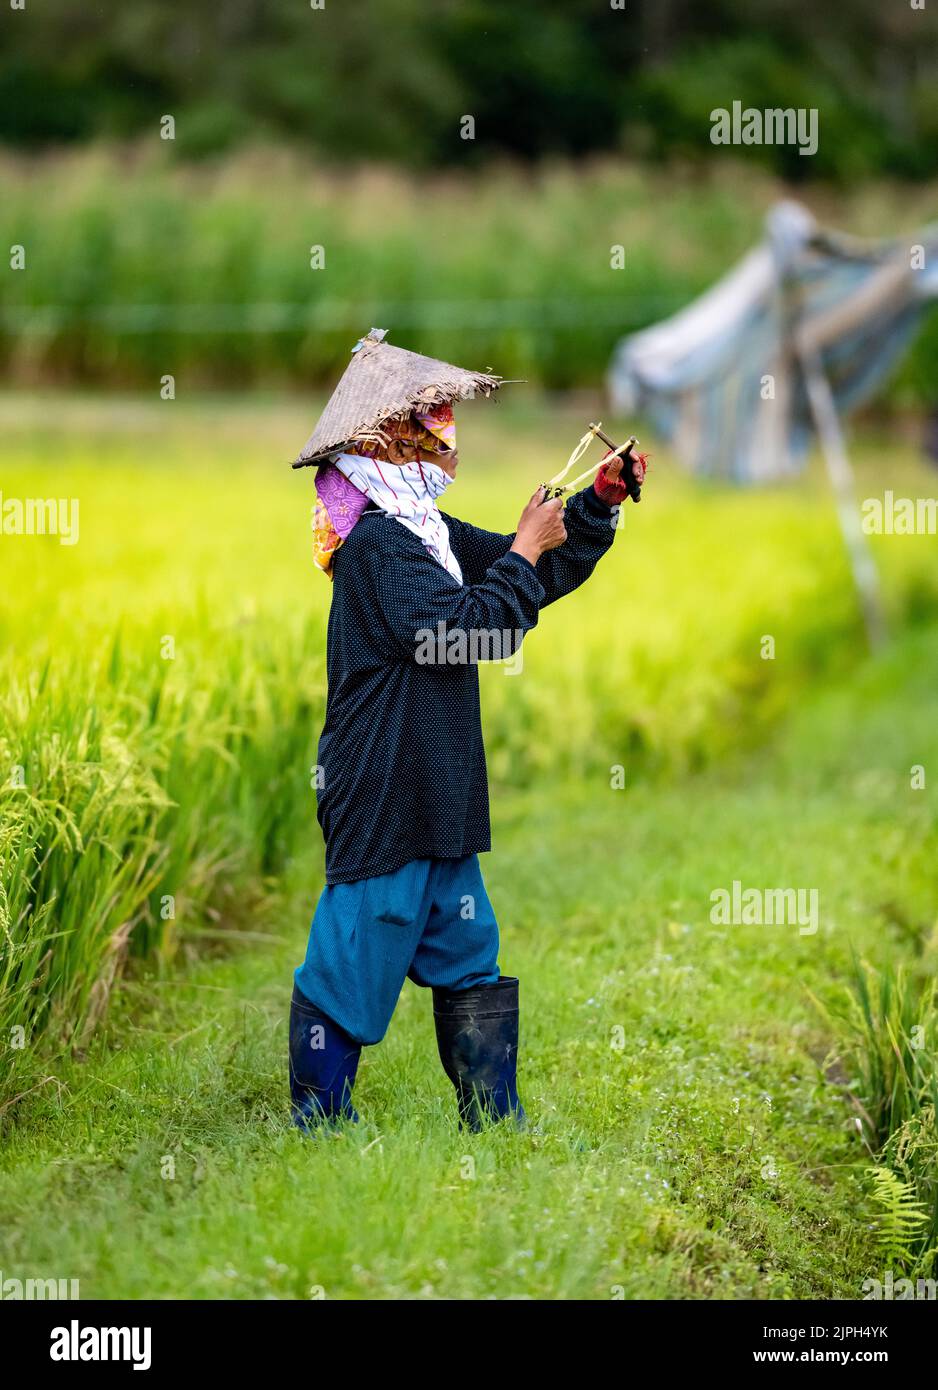 Une femme indonésienne utilisant une balle de toile pour chasser les oiseaux dans le champ de riz. Sulawesi, Indonésie. Banque D'Images